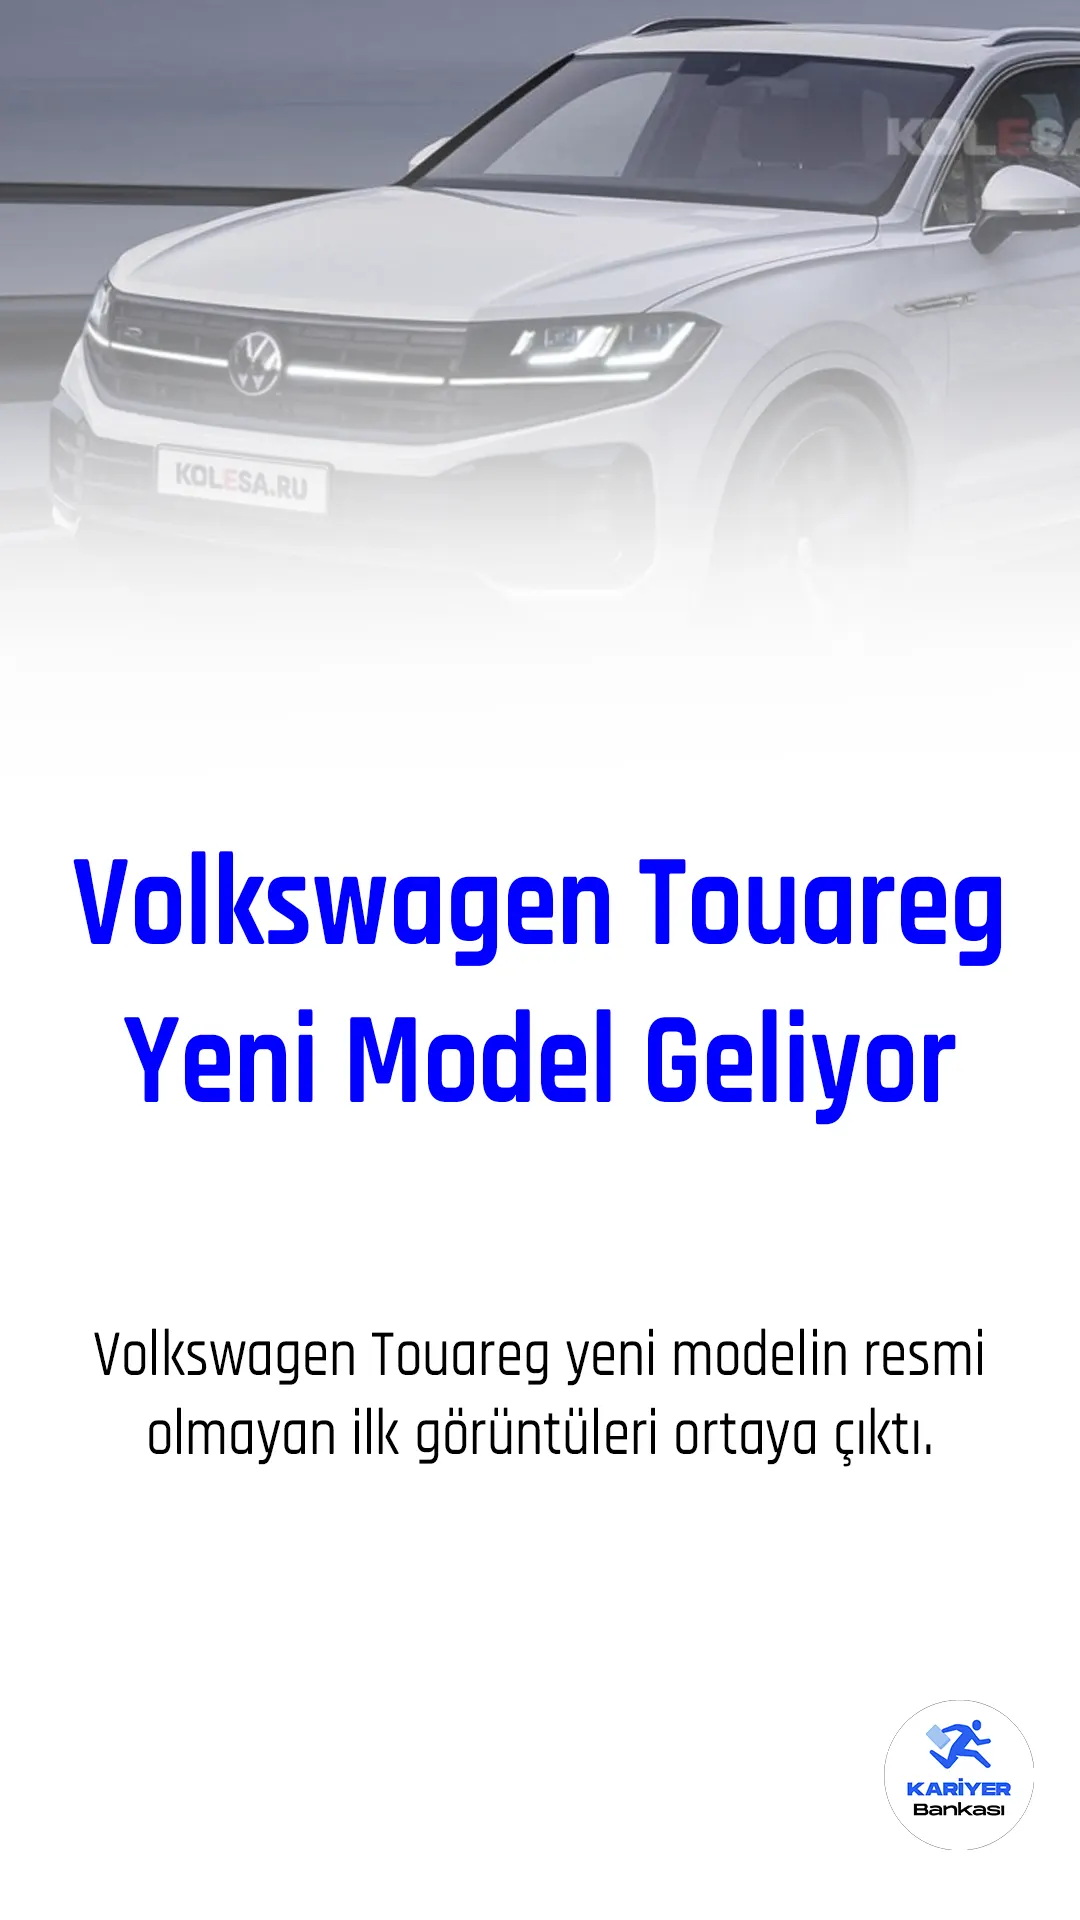 Alman otomobil üreticisi Volkswagen, 20 yıldır Touareg modelini üretmekte ve geçtiğimiz hafta aracın resmi teaser görsellerini paylaştı.